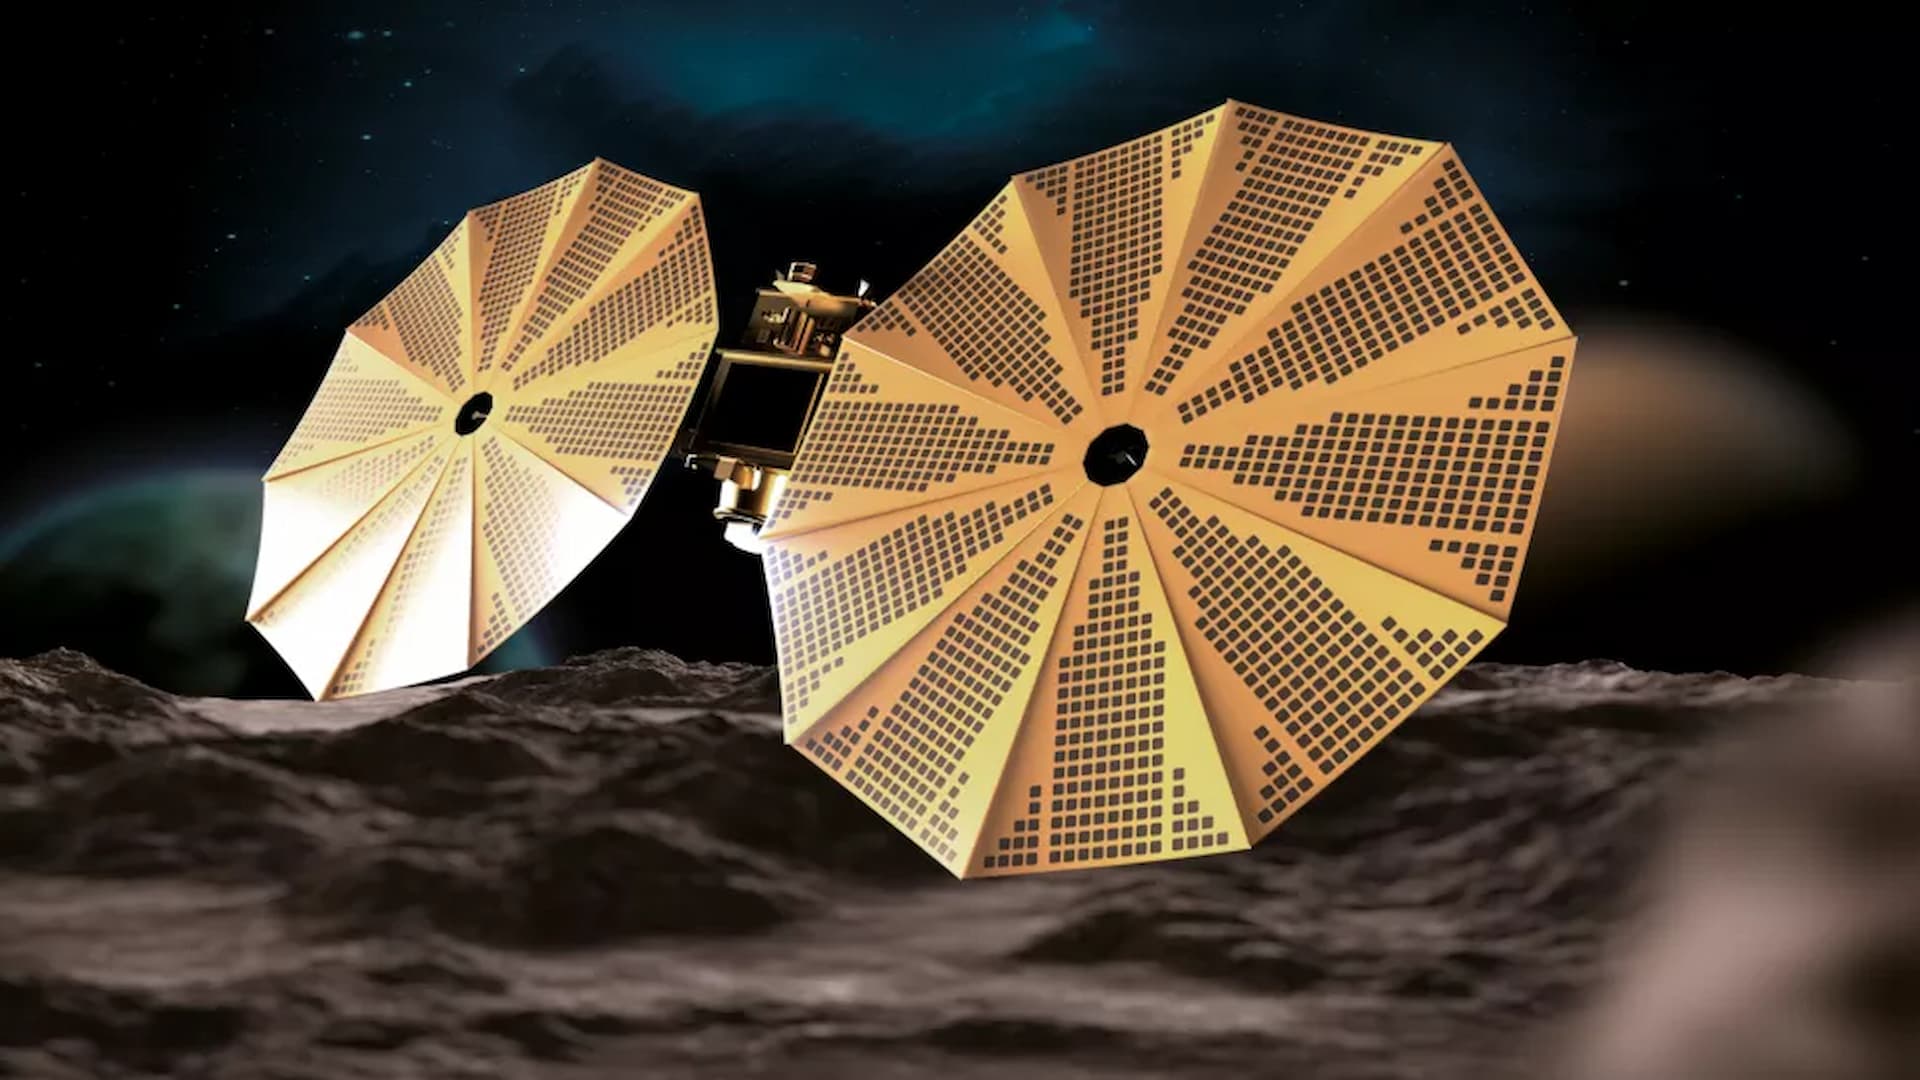 ASI - L’Agenzia spaziale degli Emirati Arabi Uniti annuncia la missione EMA destinata allo studio degli asteroidi con a bordo uno spettrometro italiano